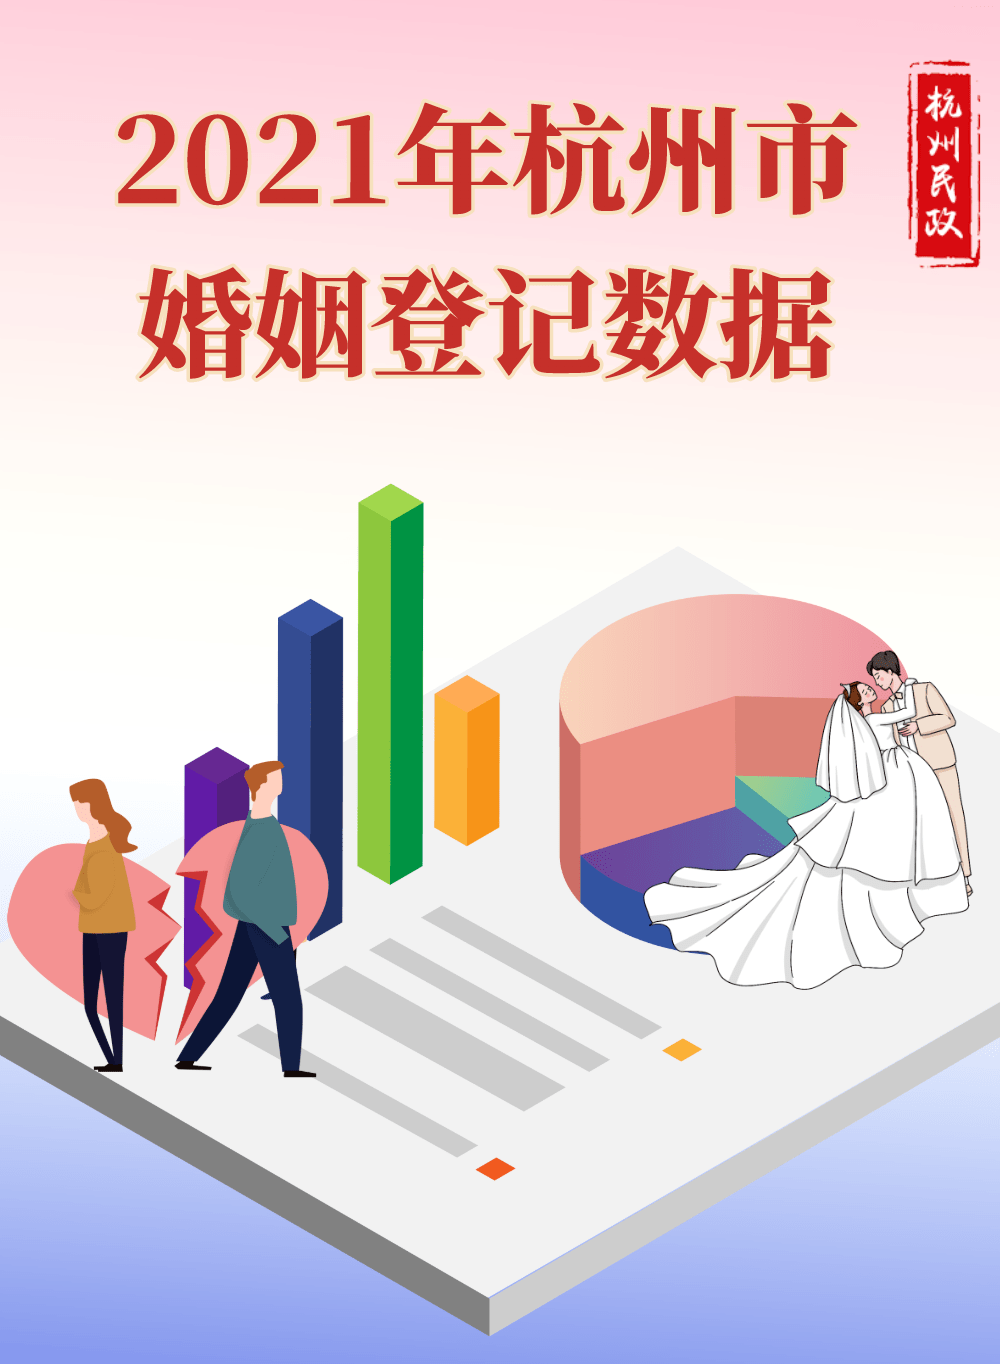 8%,2021年杭州市婚姻登记数据出炉!